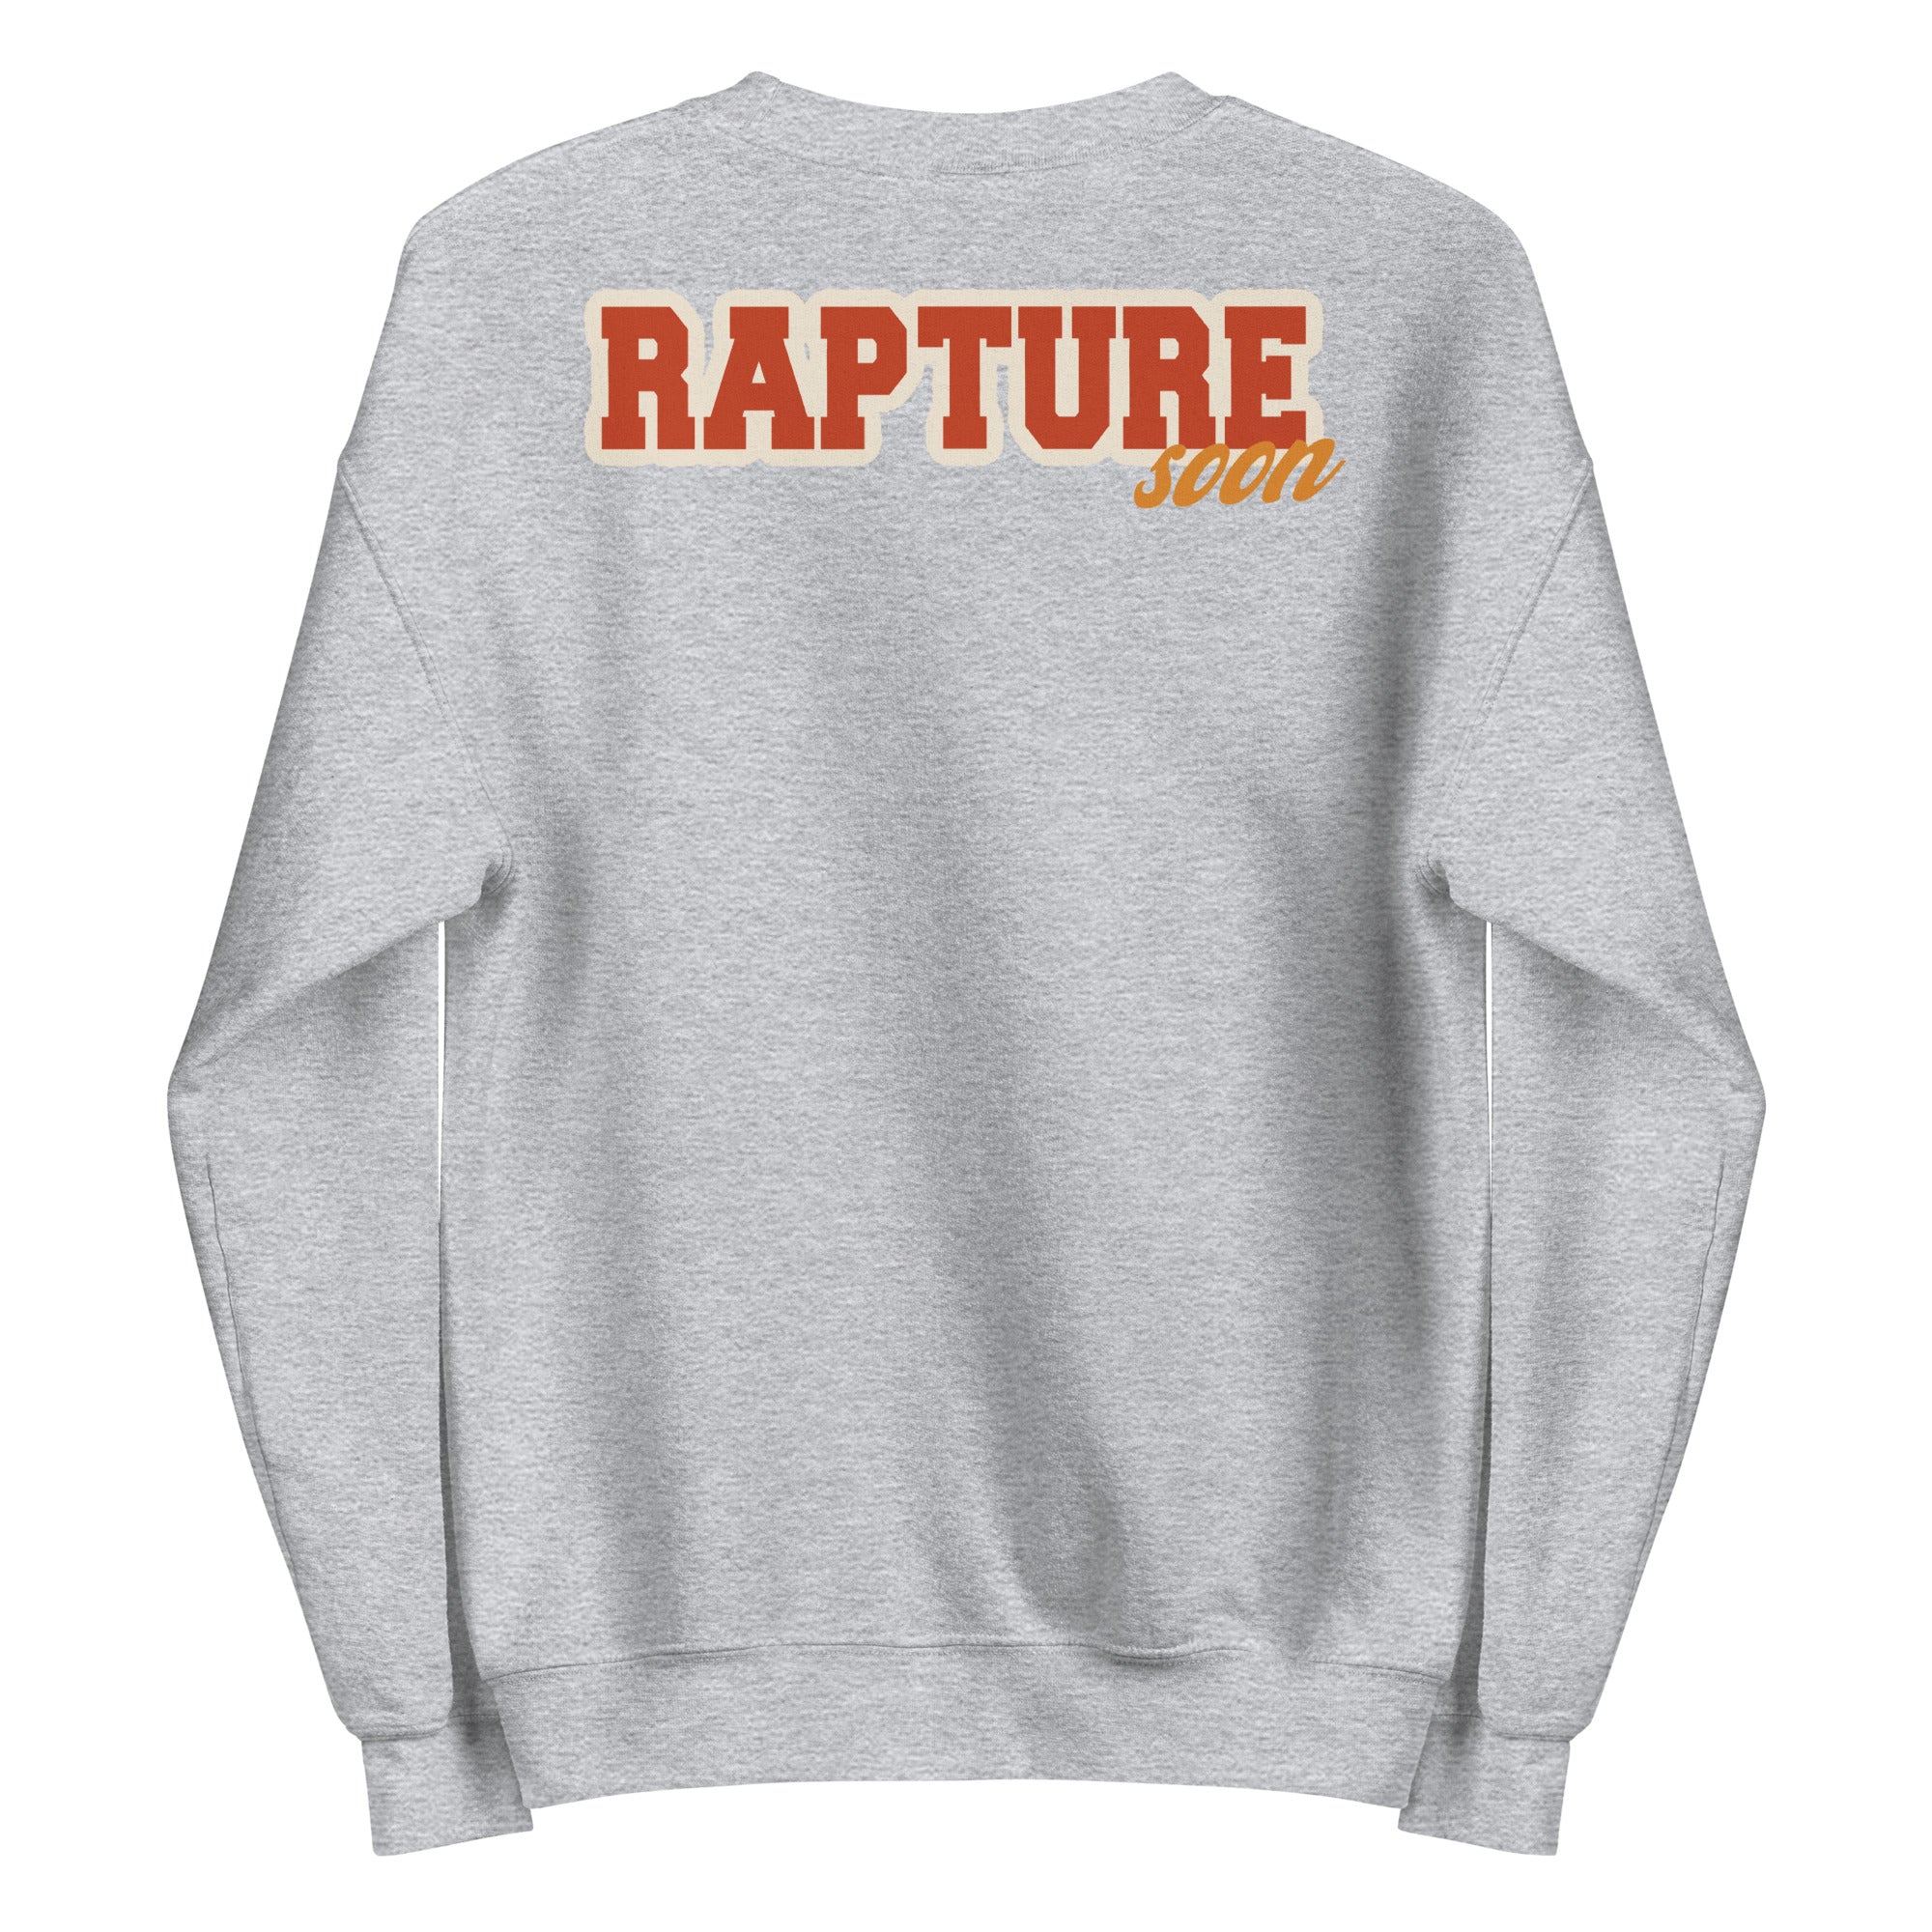 Rapture Soon Rainbow Unisex Sweatshirt